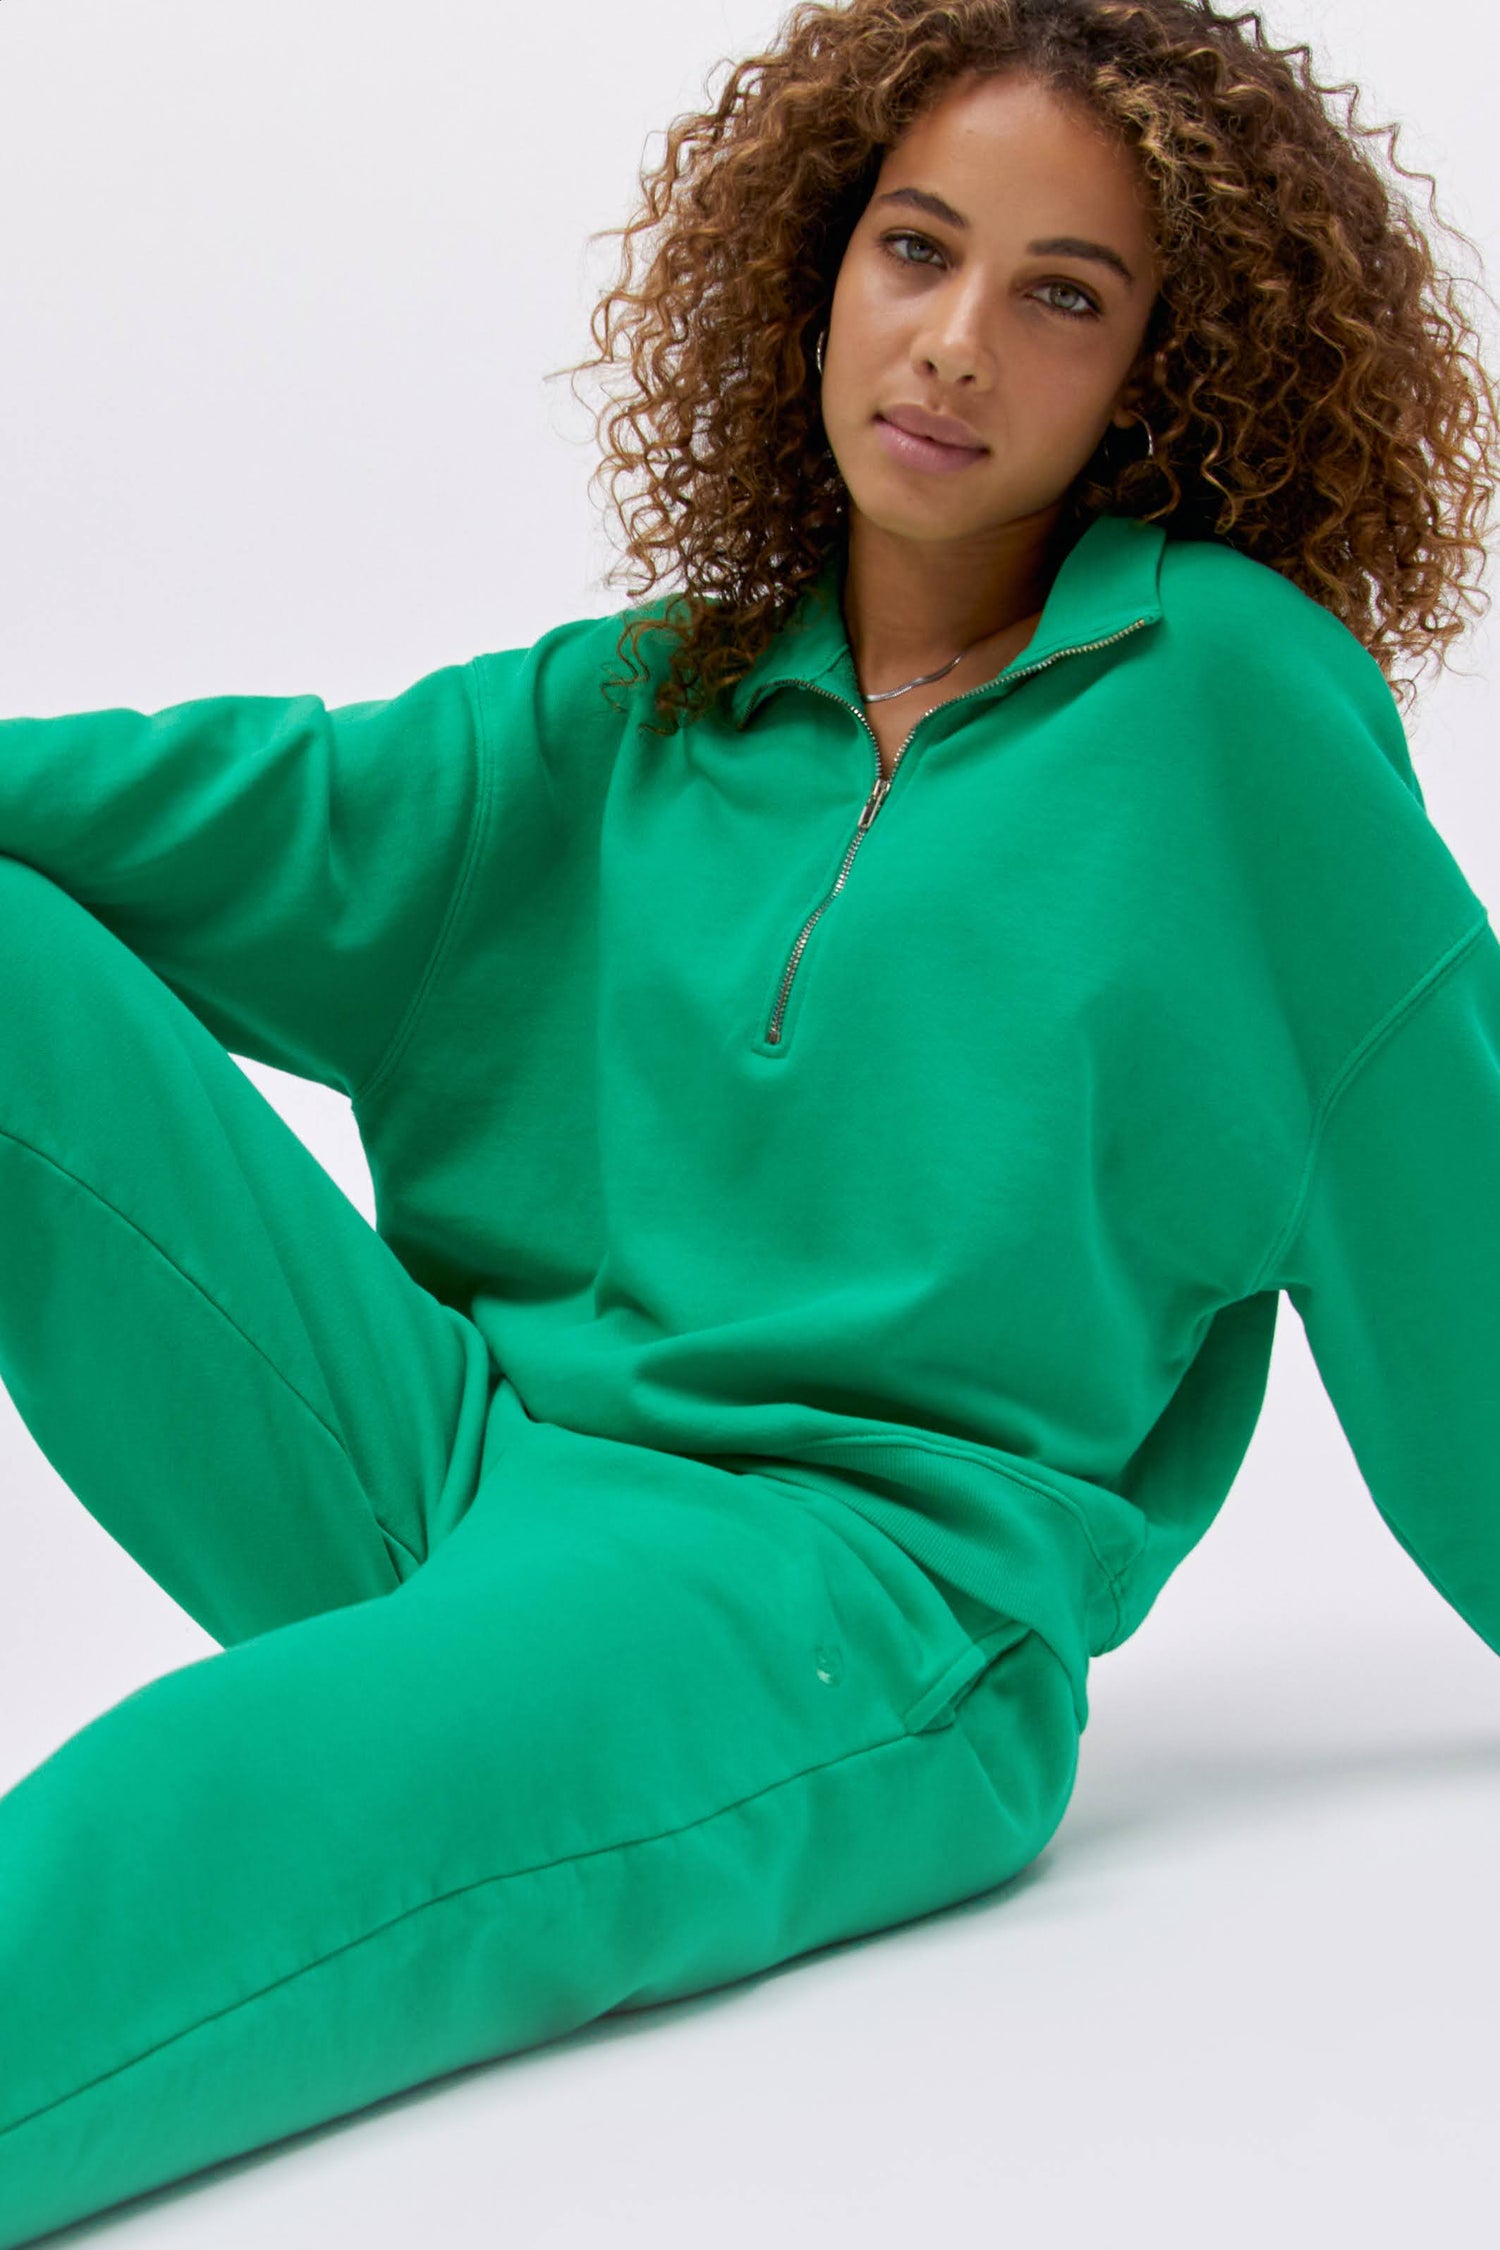 Model wearing a boyfriend sweatpant in lucky green.